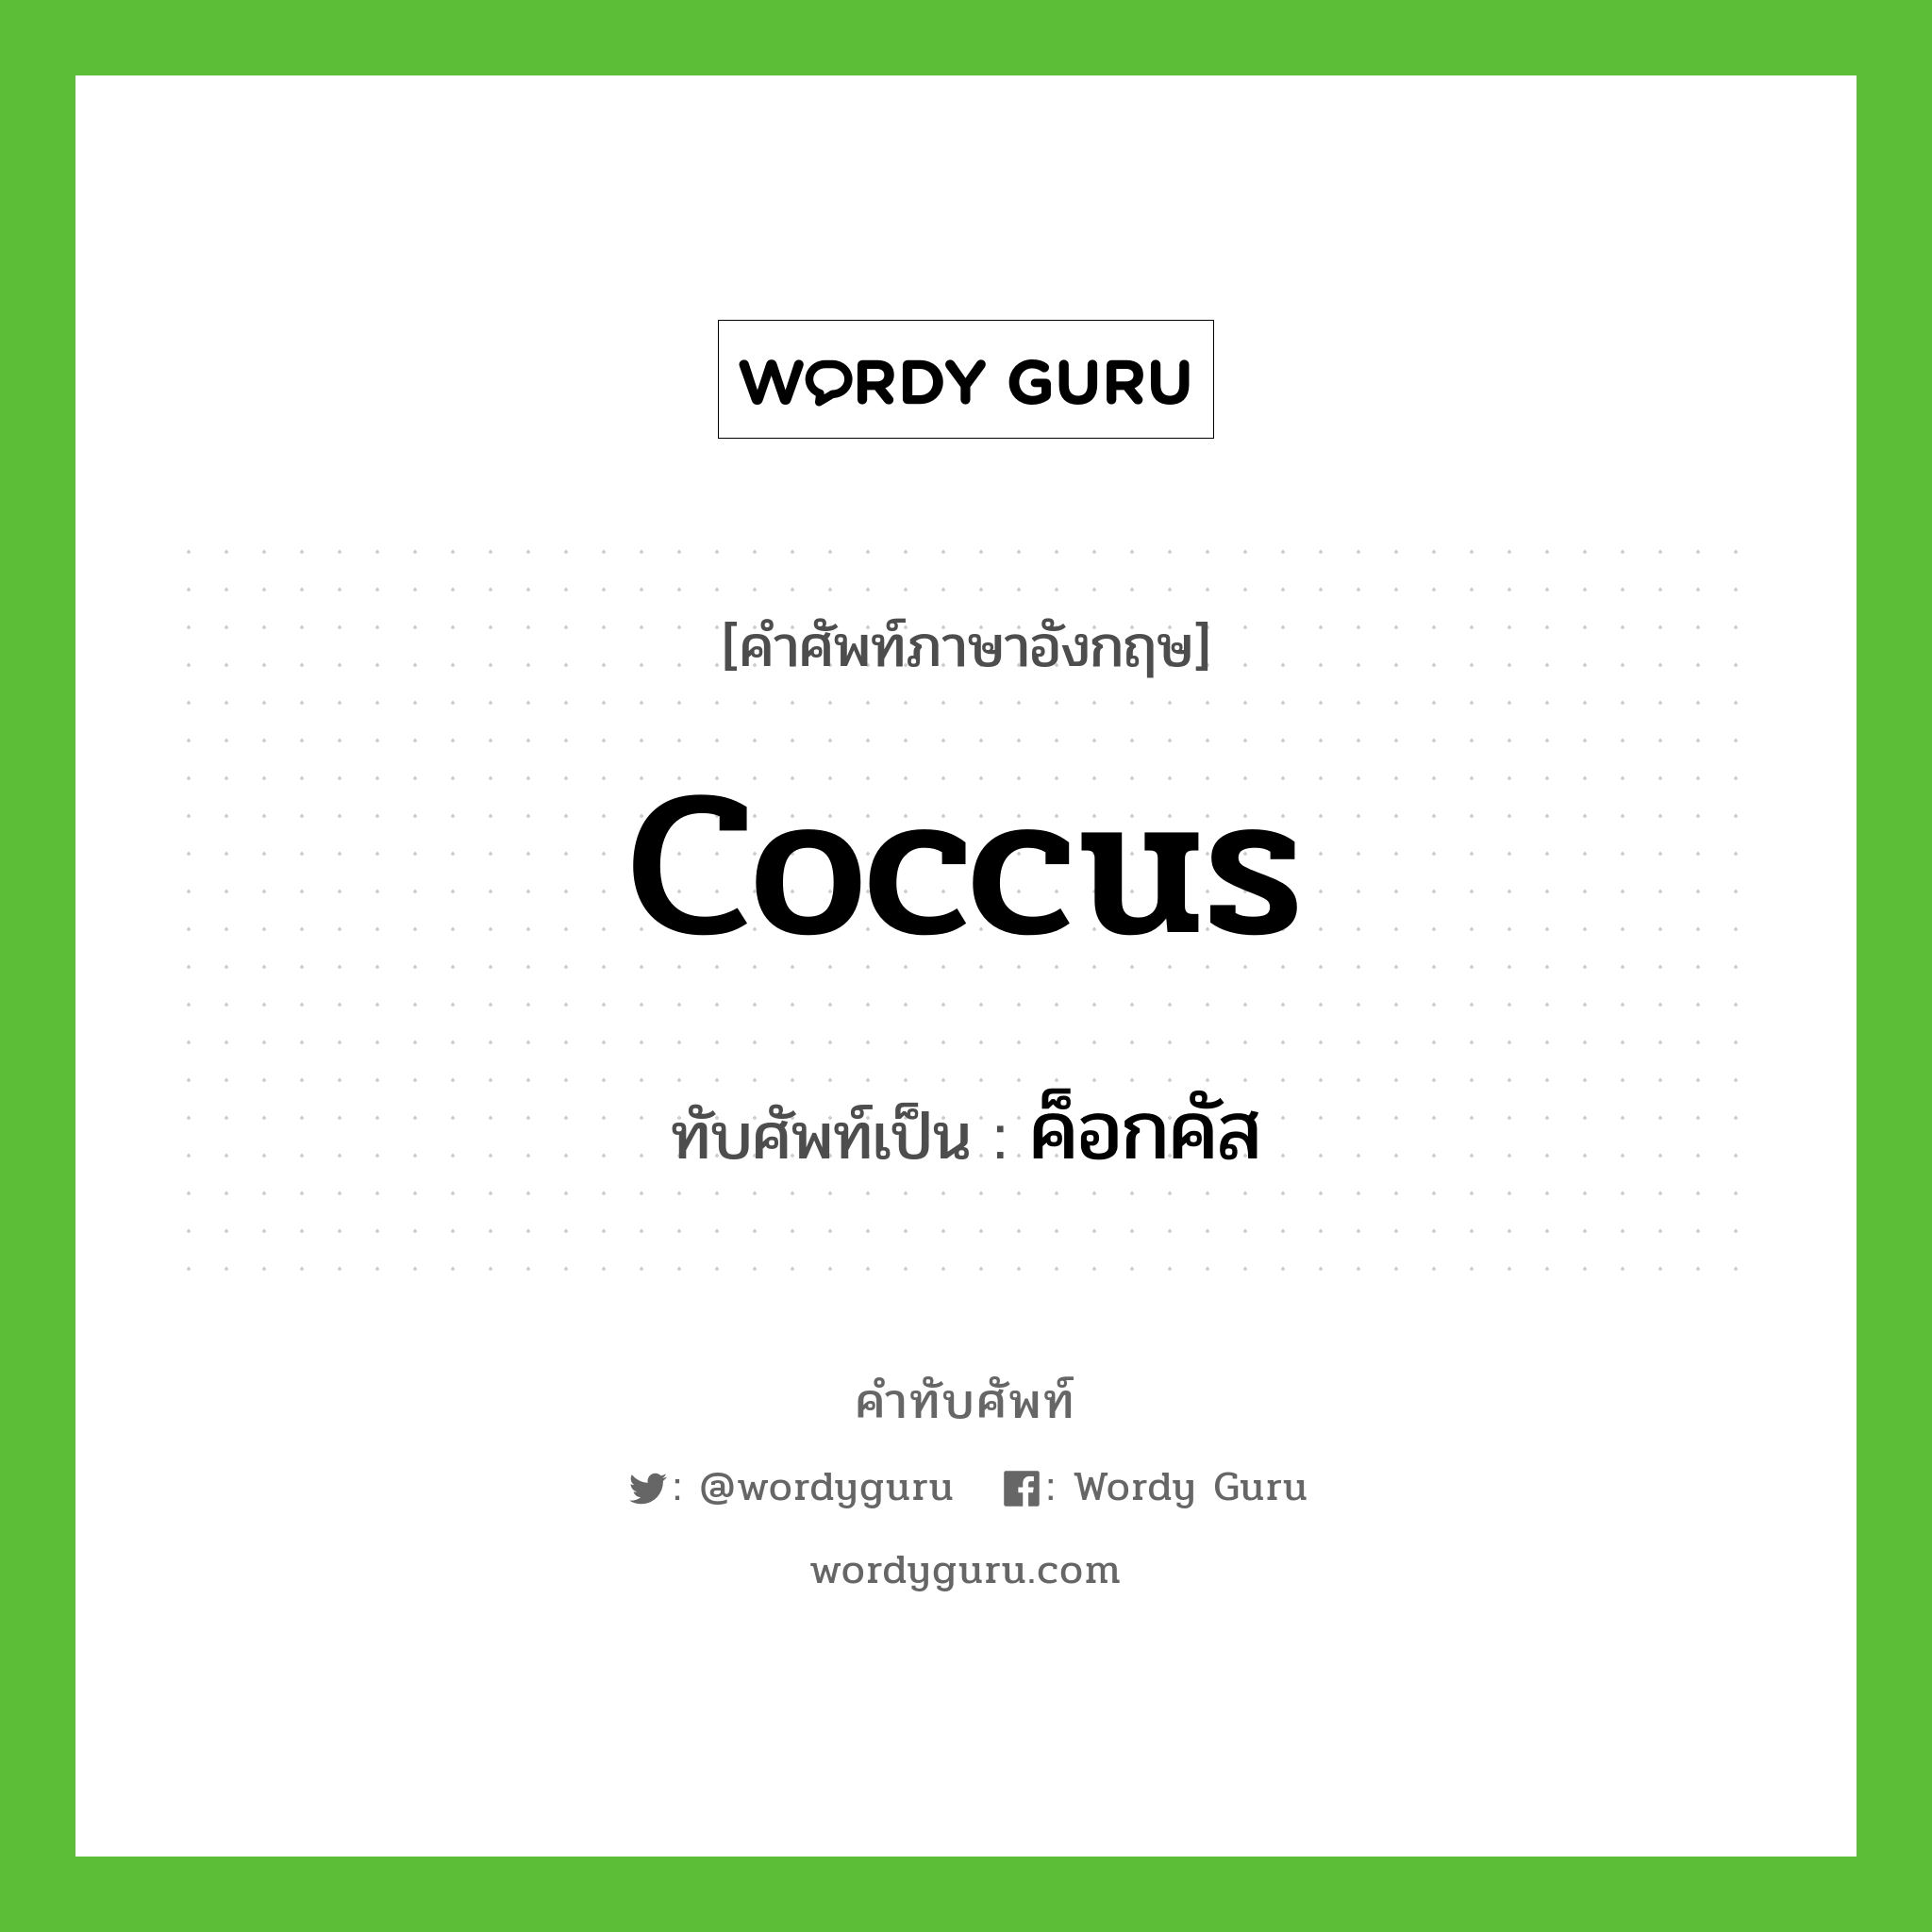 coccus เขียนเป็นคำไทยว่าอะไร?, คำศัพท์ภาษาอังกฤษ coccus ทับศัพท์เป็น ค็อกคัส